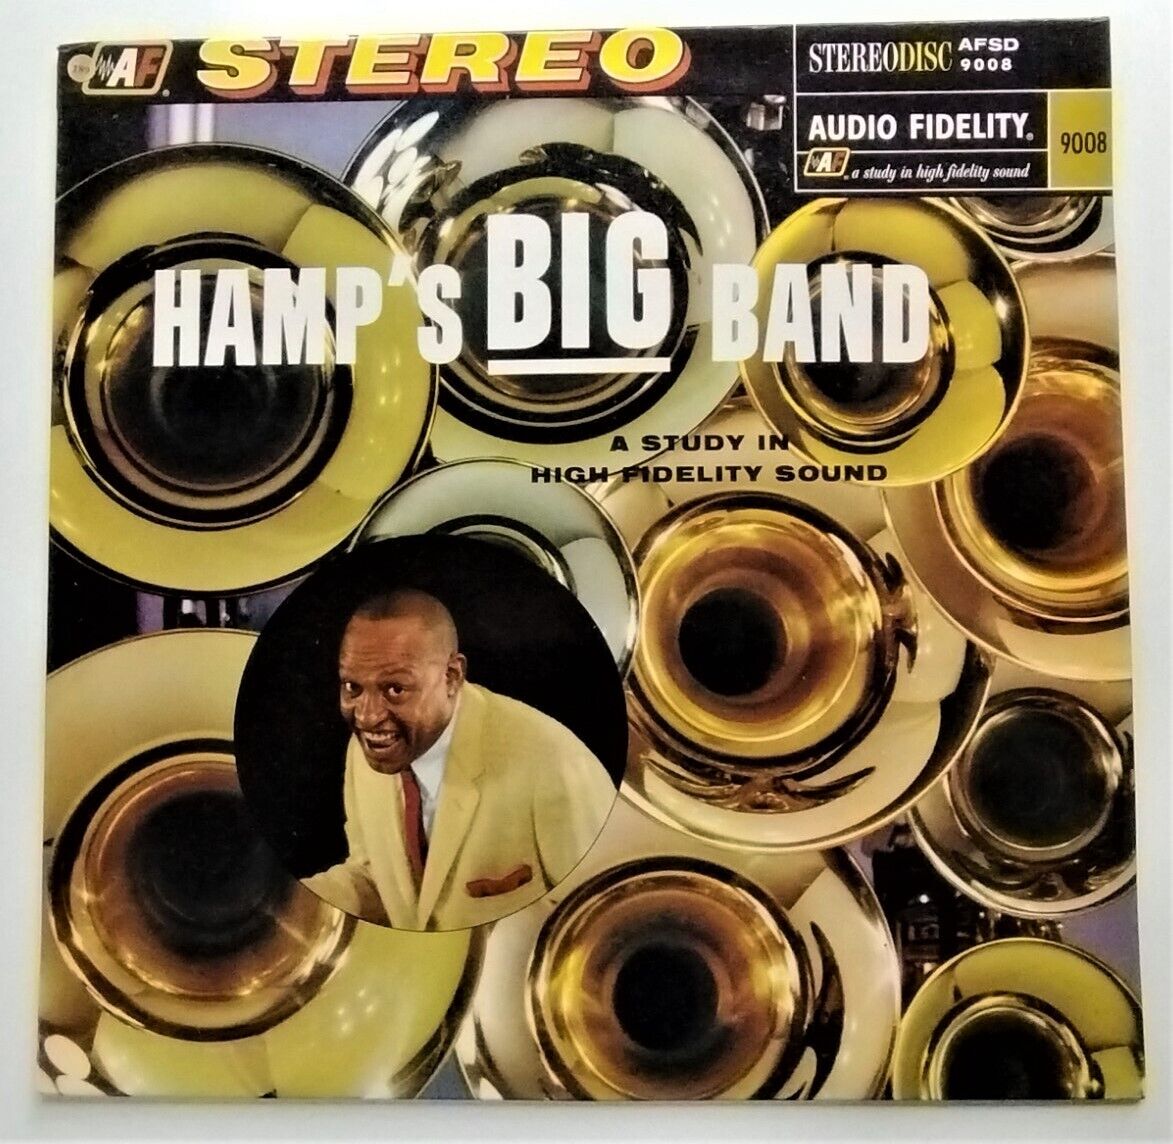 Hamp's Big Band: Lionel Hampton and His Orchestra - AFSD9008 - France - Vinyl LP